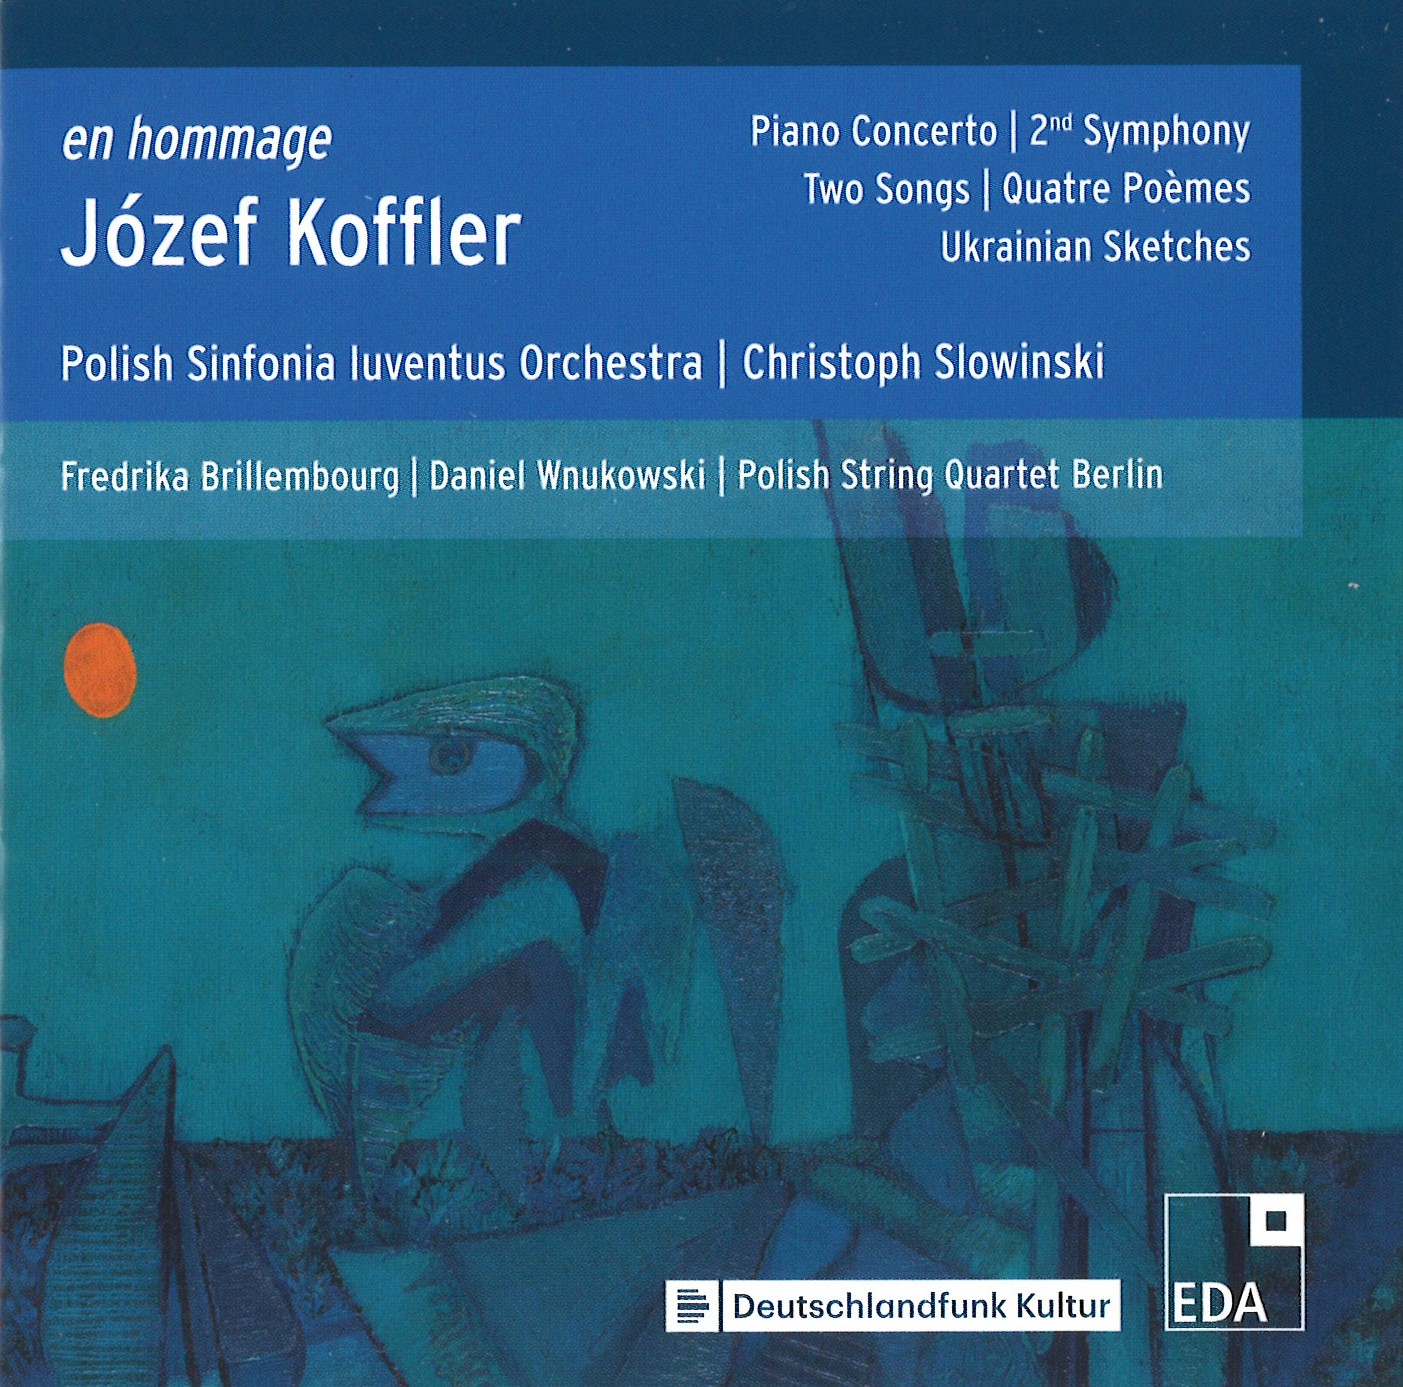 okładka płyty Józef Koffler en hommage